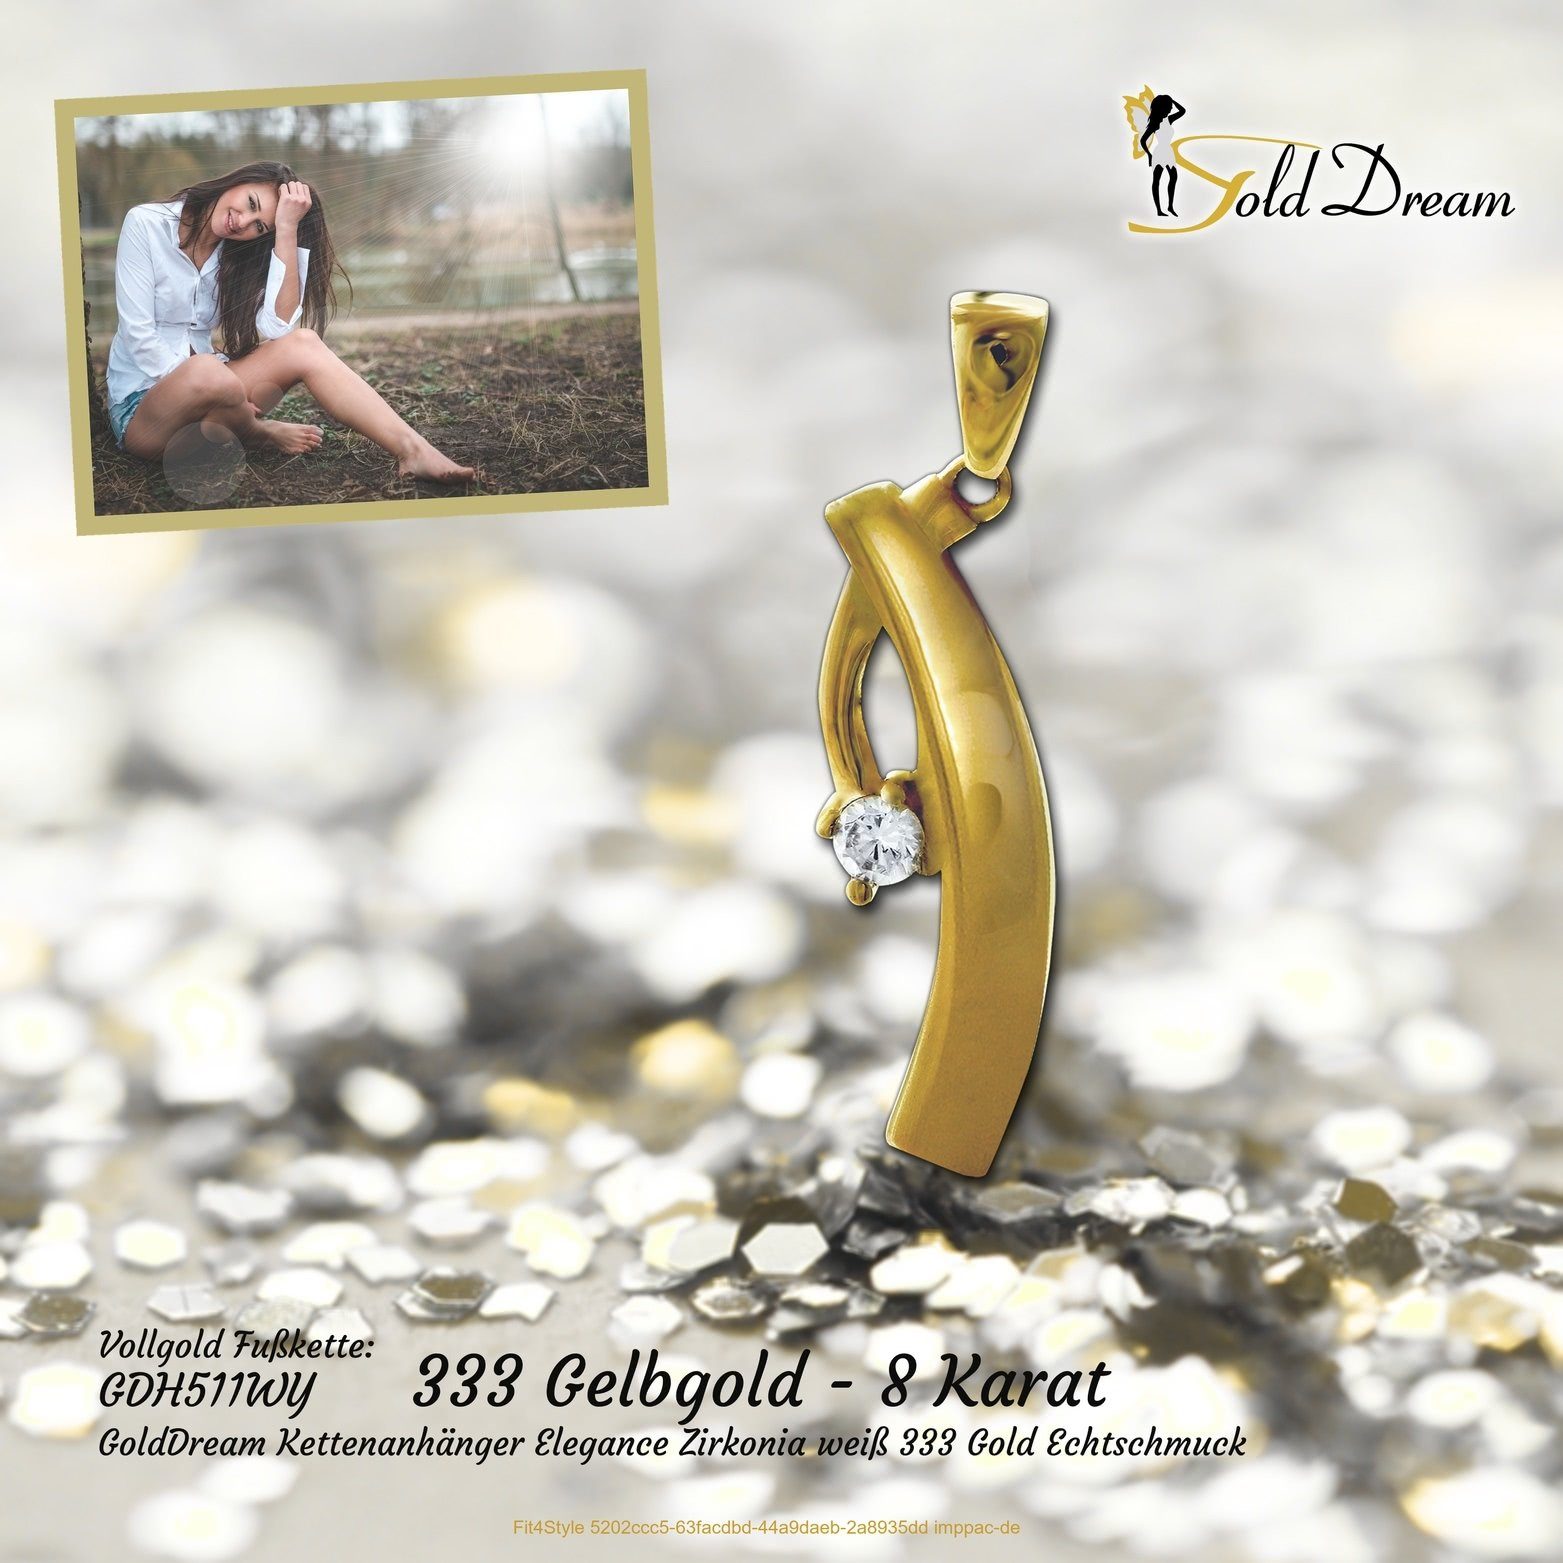 GoldDream Elegance Karat Kettenanhänger Kettenanhänger (Elegance) GoldDream 8K, - 29mm, 333 8 Kettenanhänger Gelbgold ca.